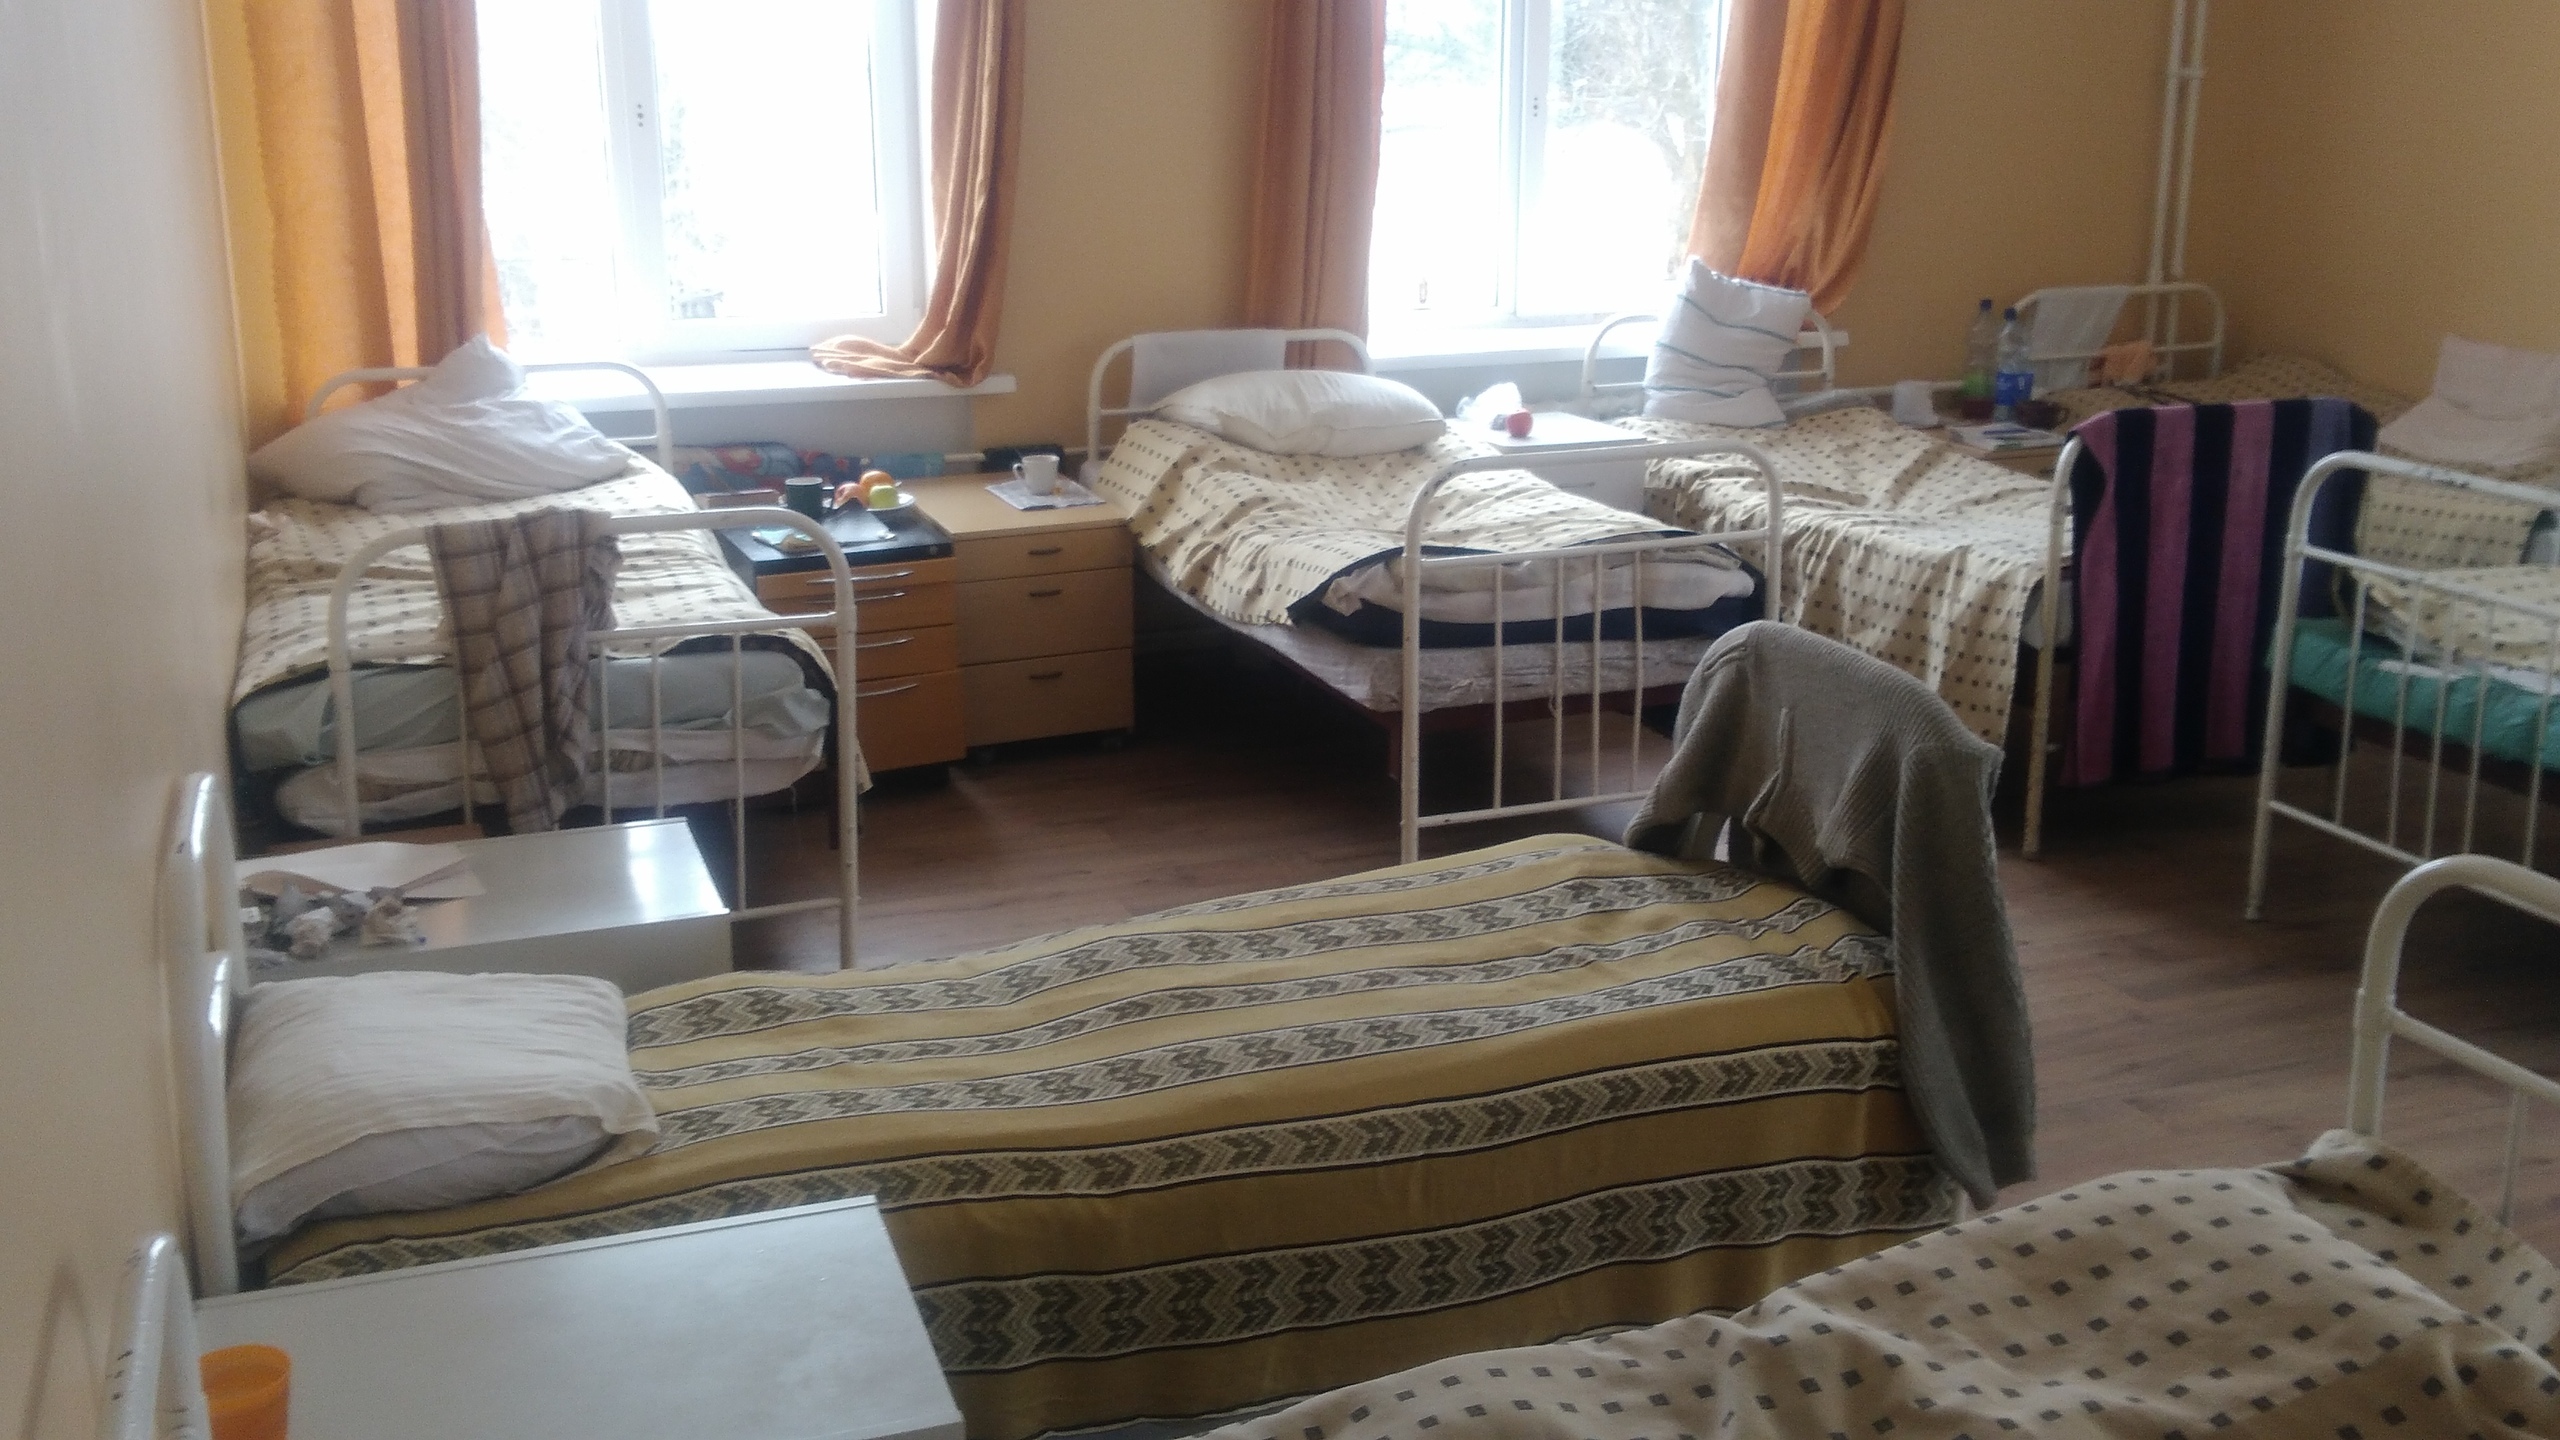 Пациенты стационара ГКБ №8 в Ижевске: «Палаты переполнены, туалет один на 60 человек»